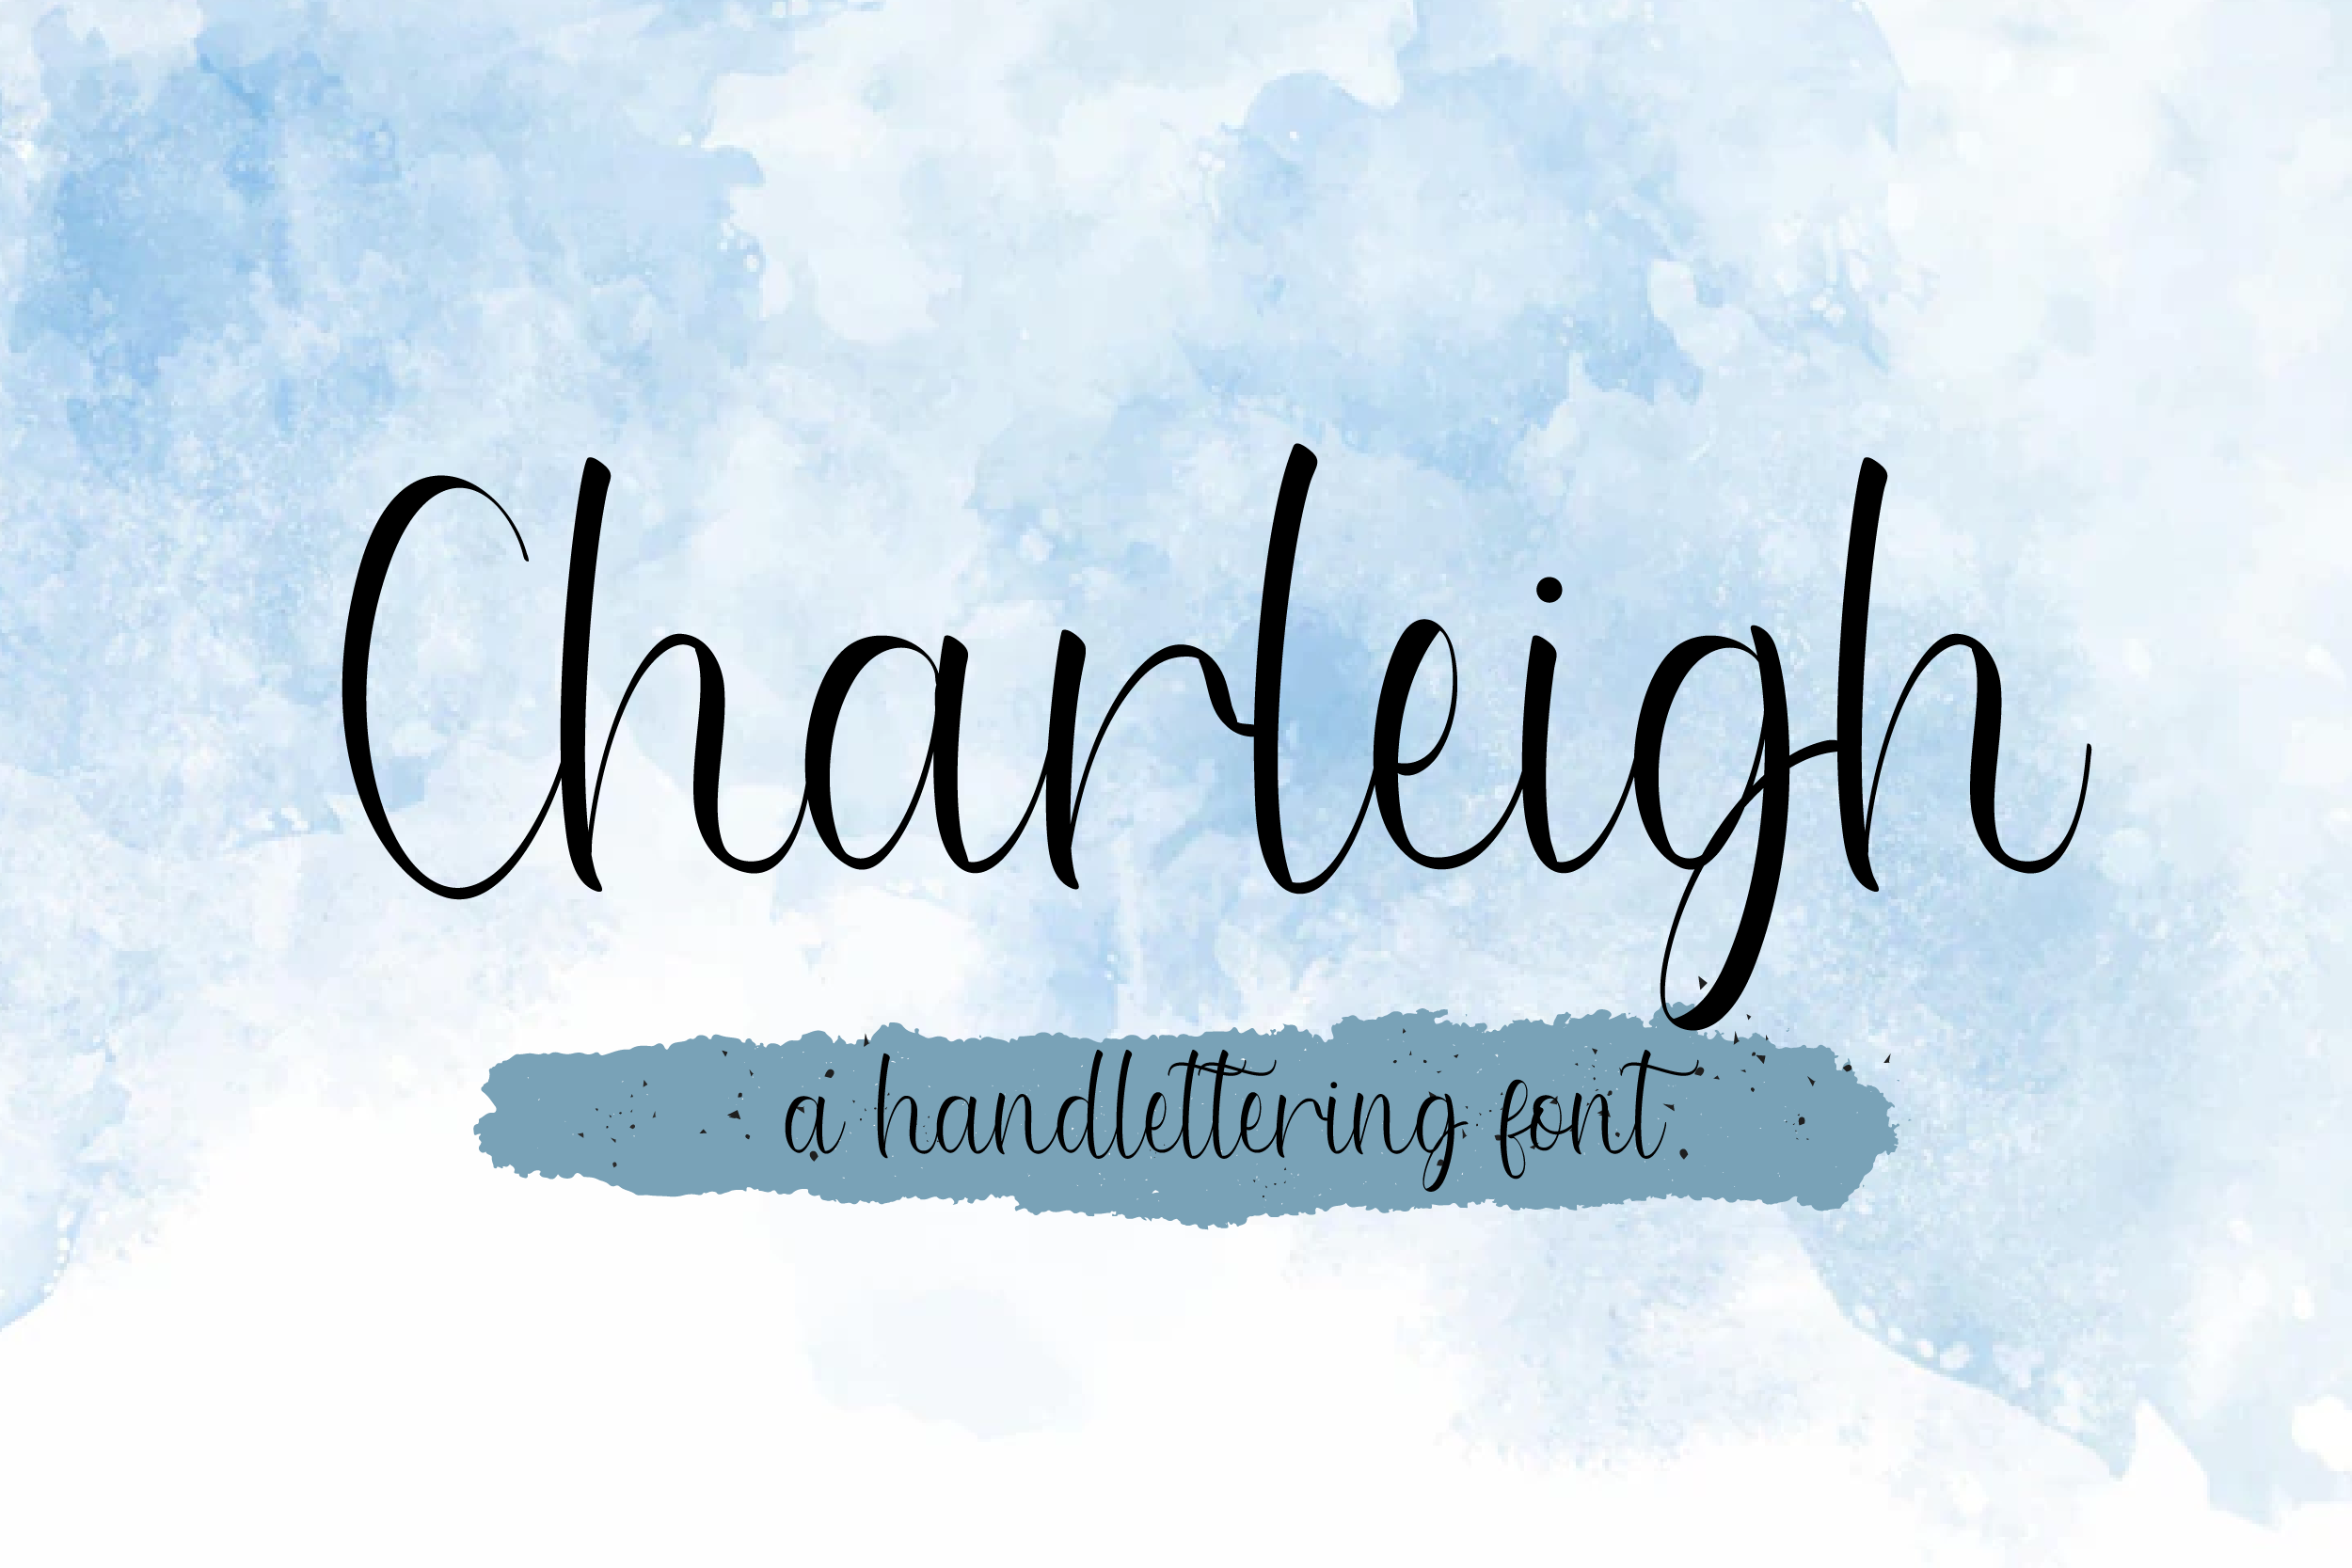 Charleigh